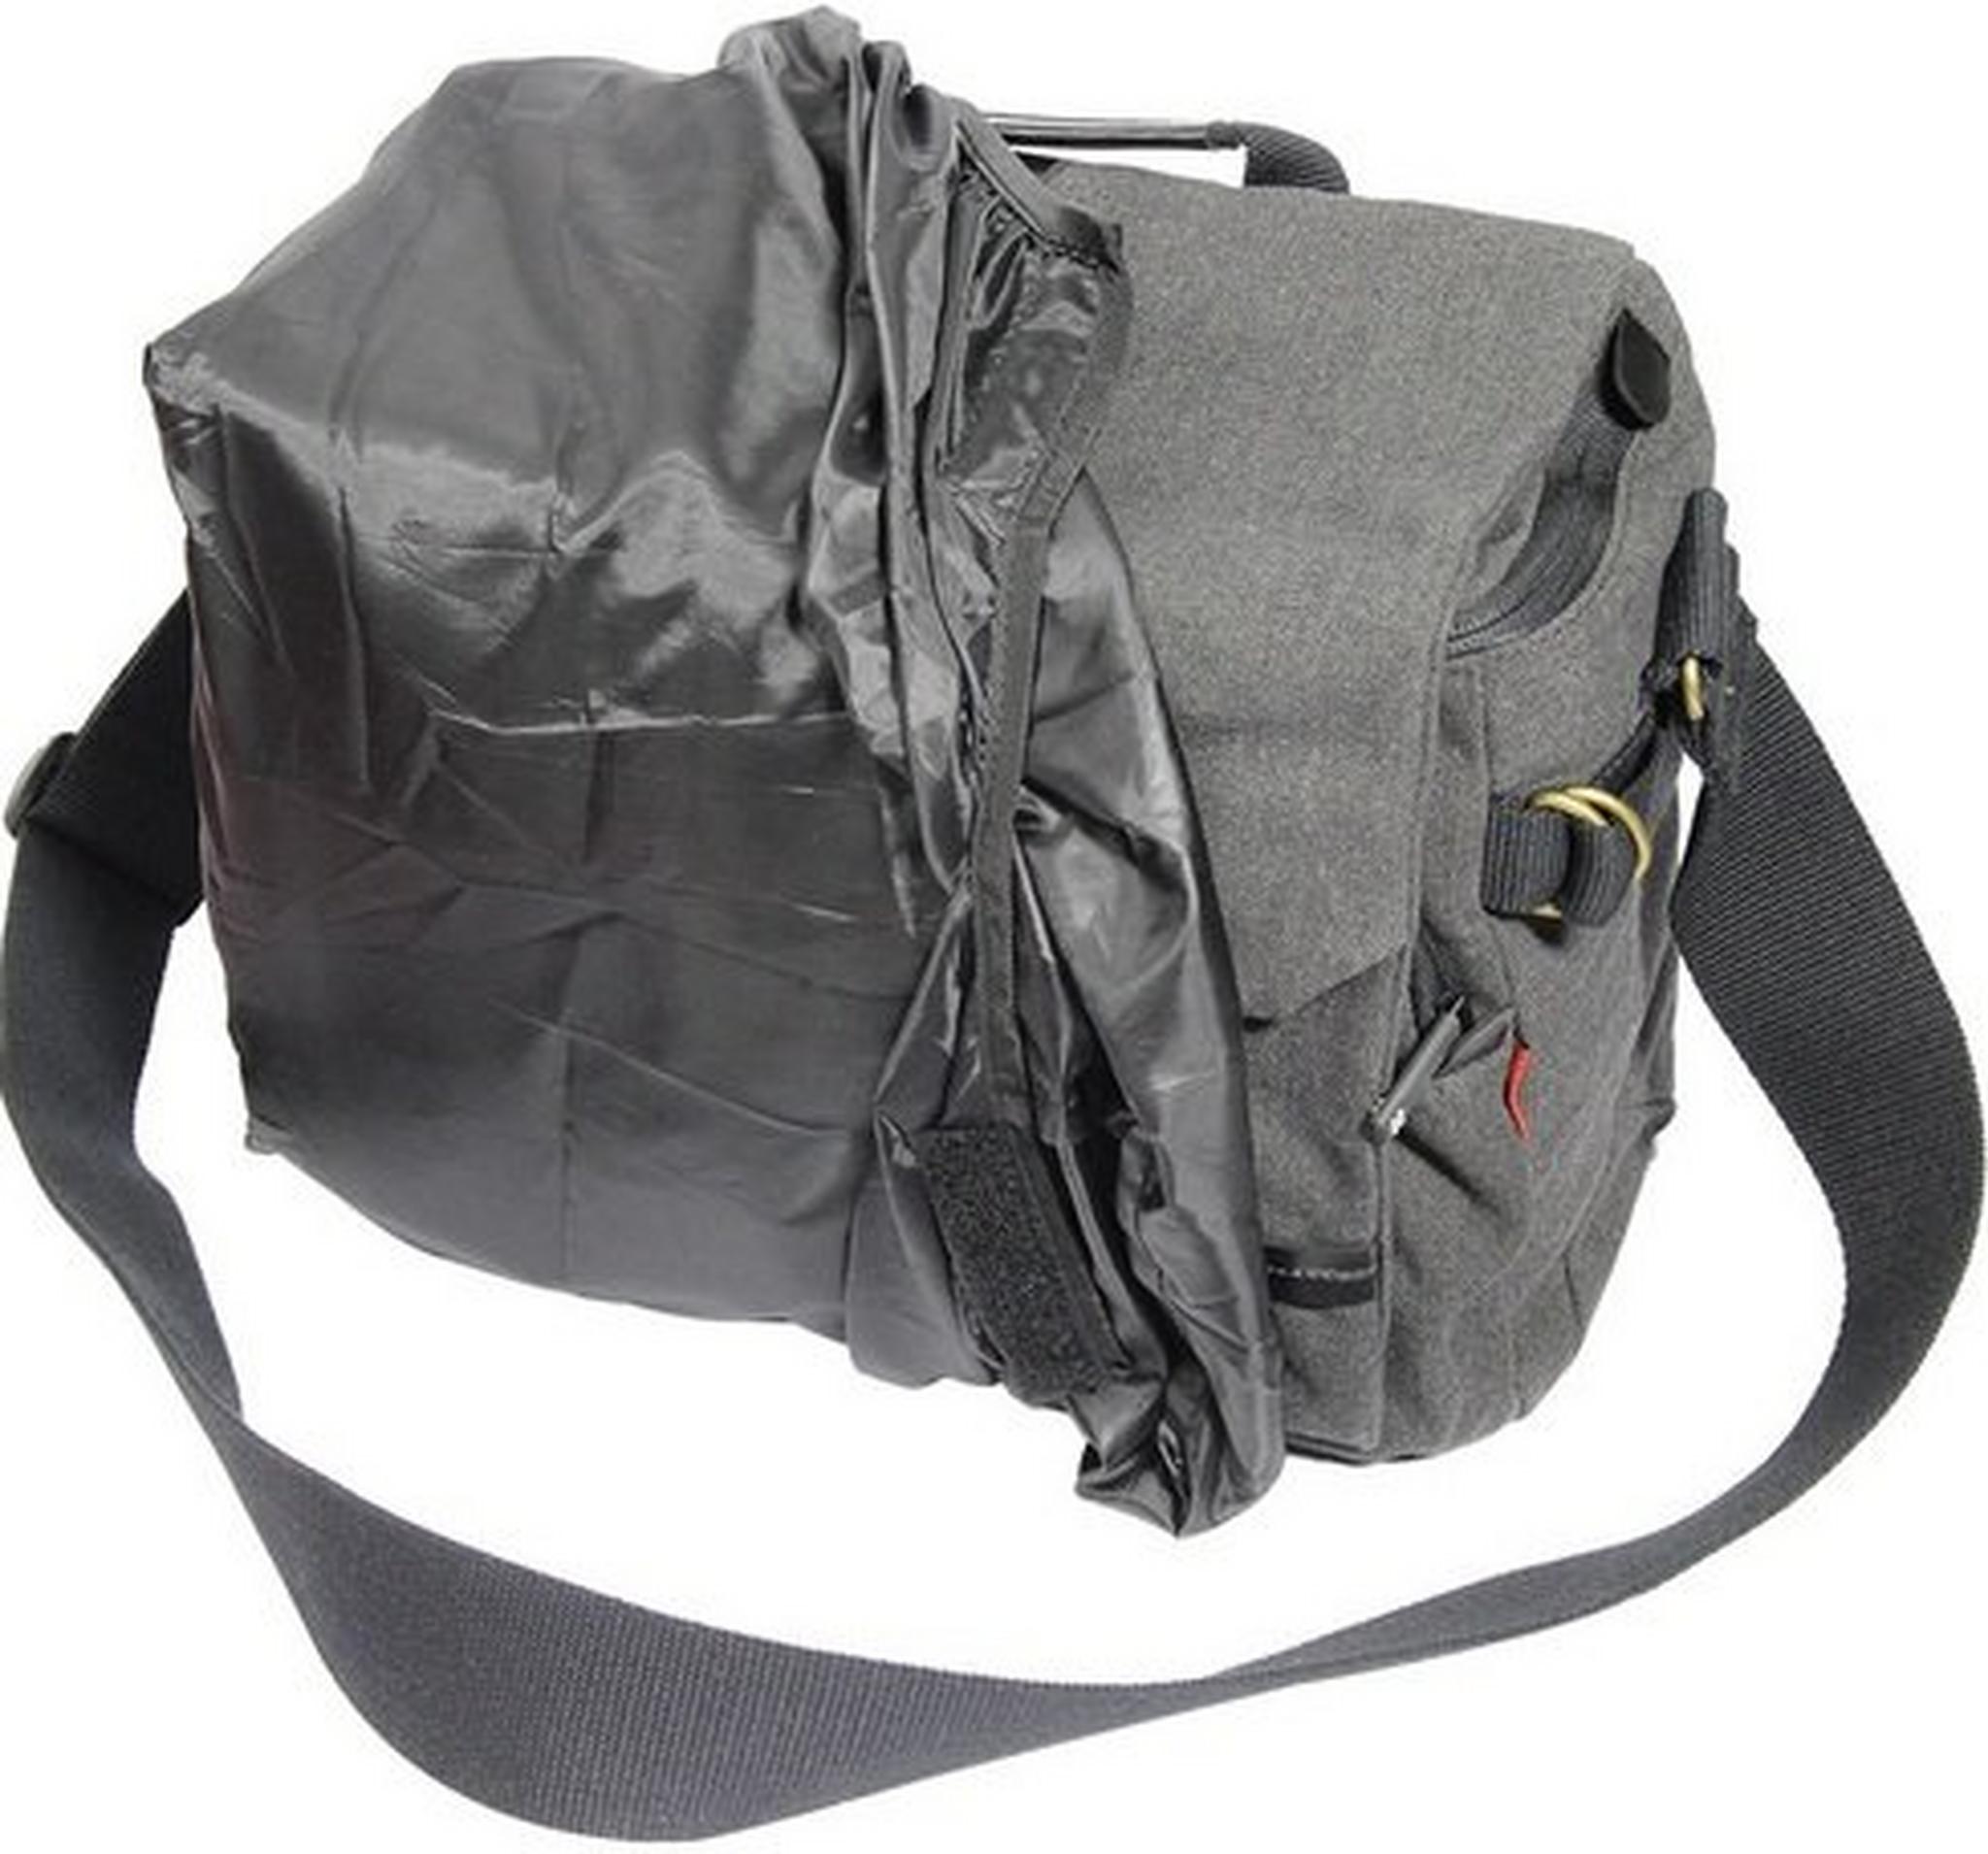 Promate Xplore Contemporary DSLR Camera Bag Large